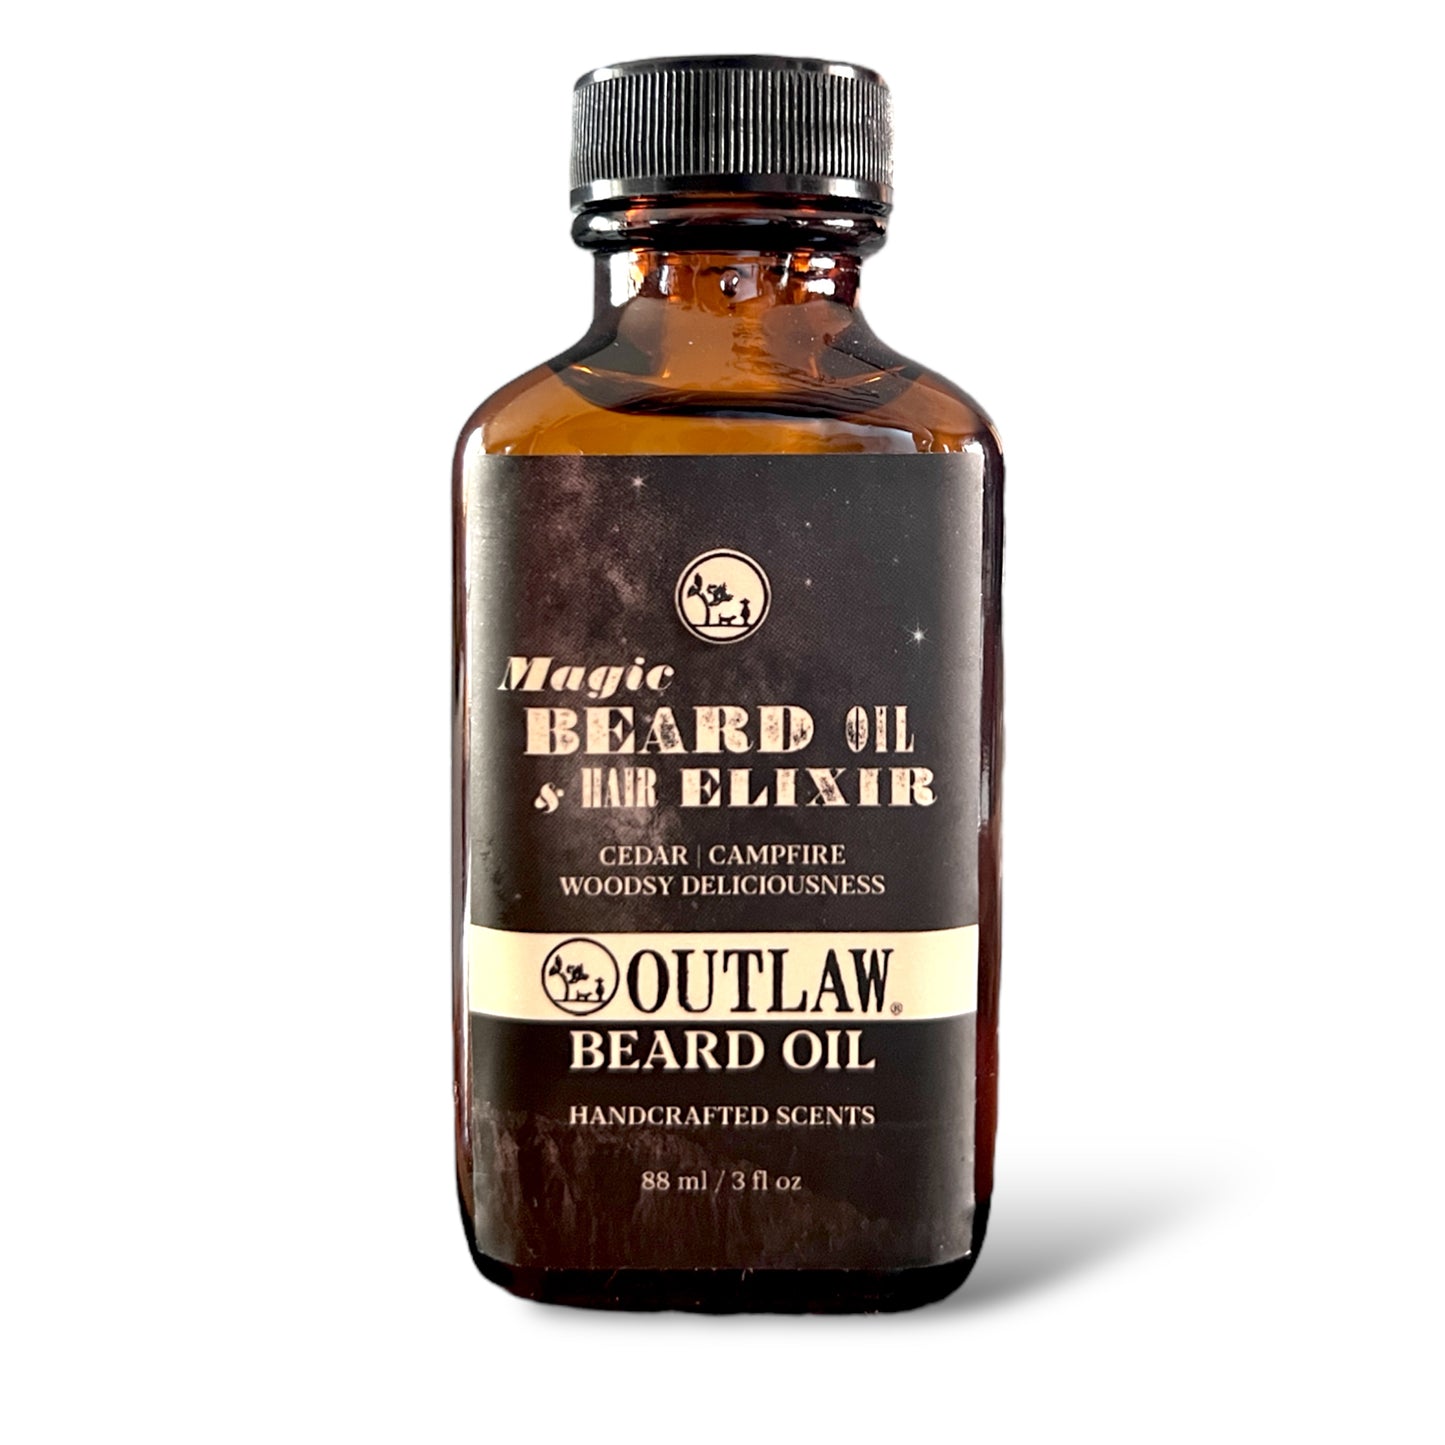 Magic Beard Oil & Hair Elixir (aka Outlaw beard oil)